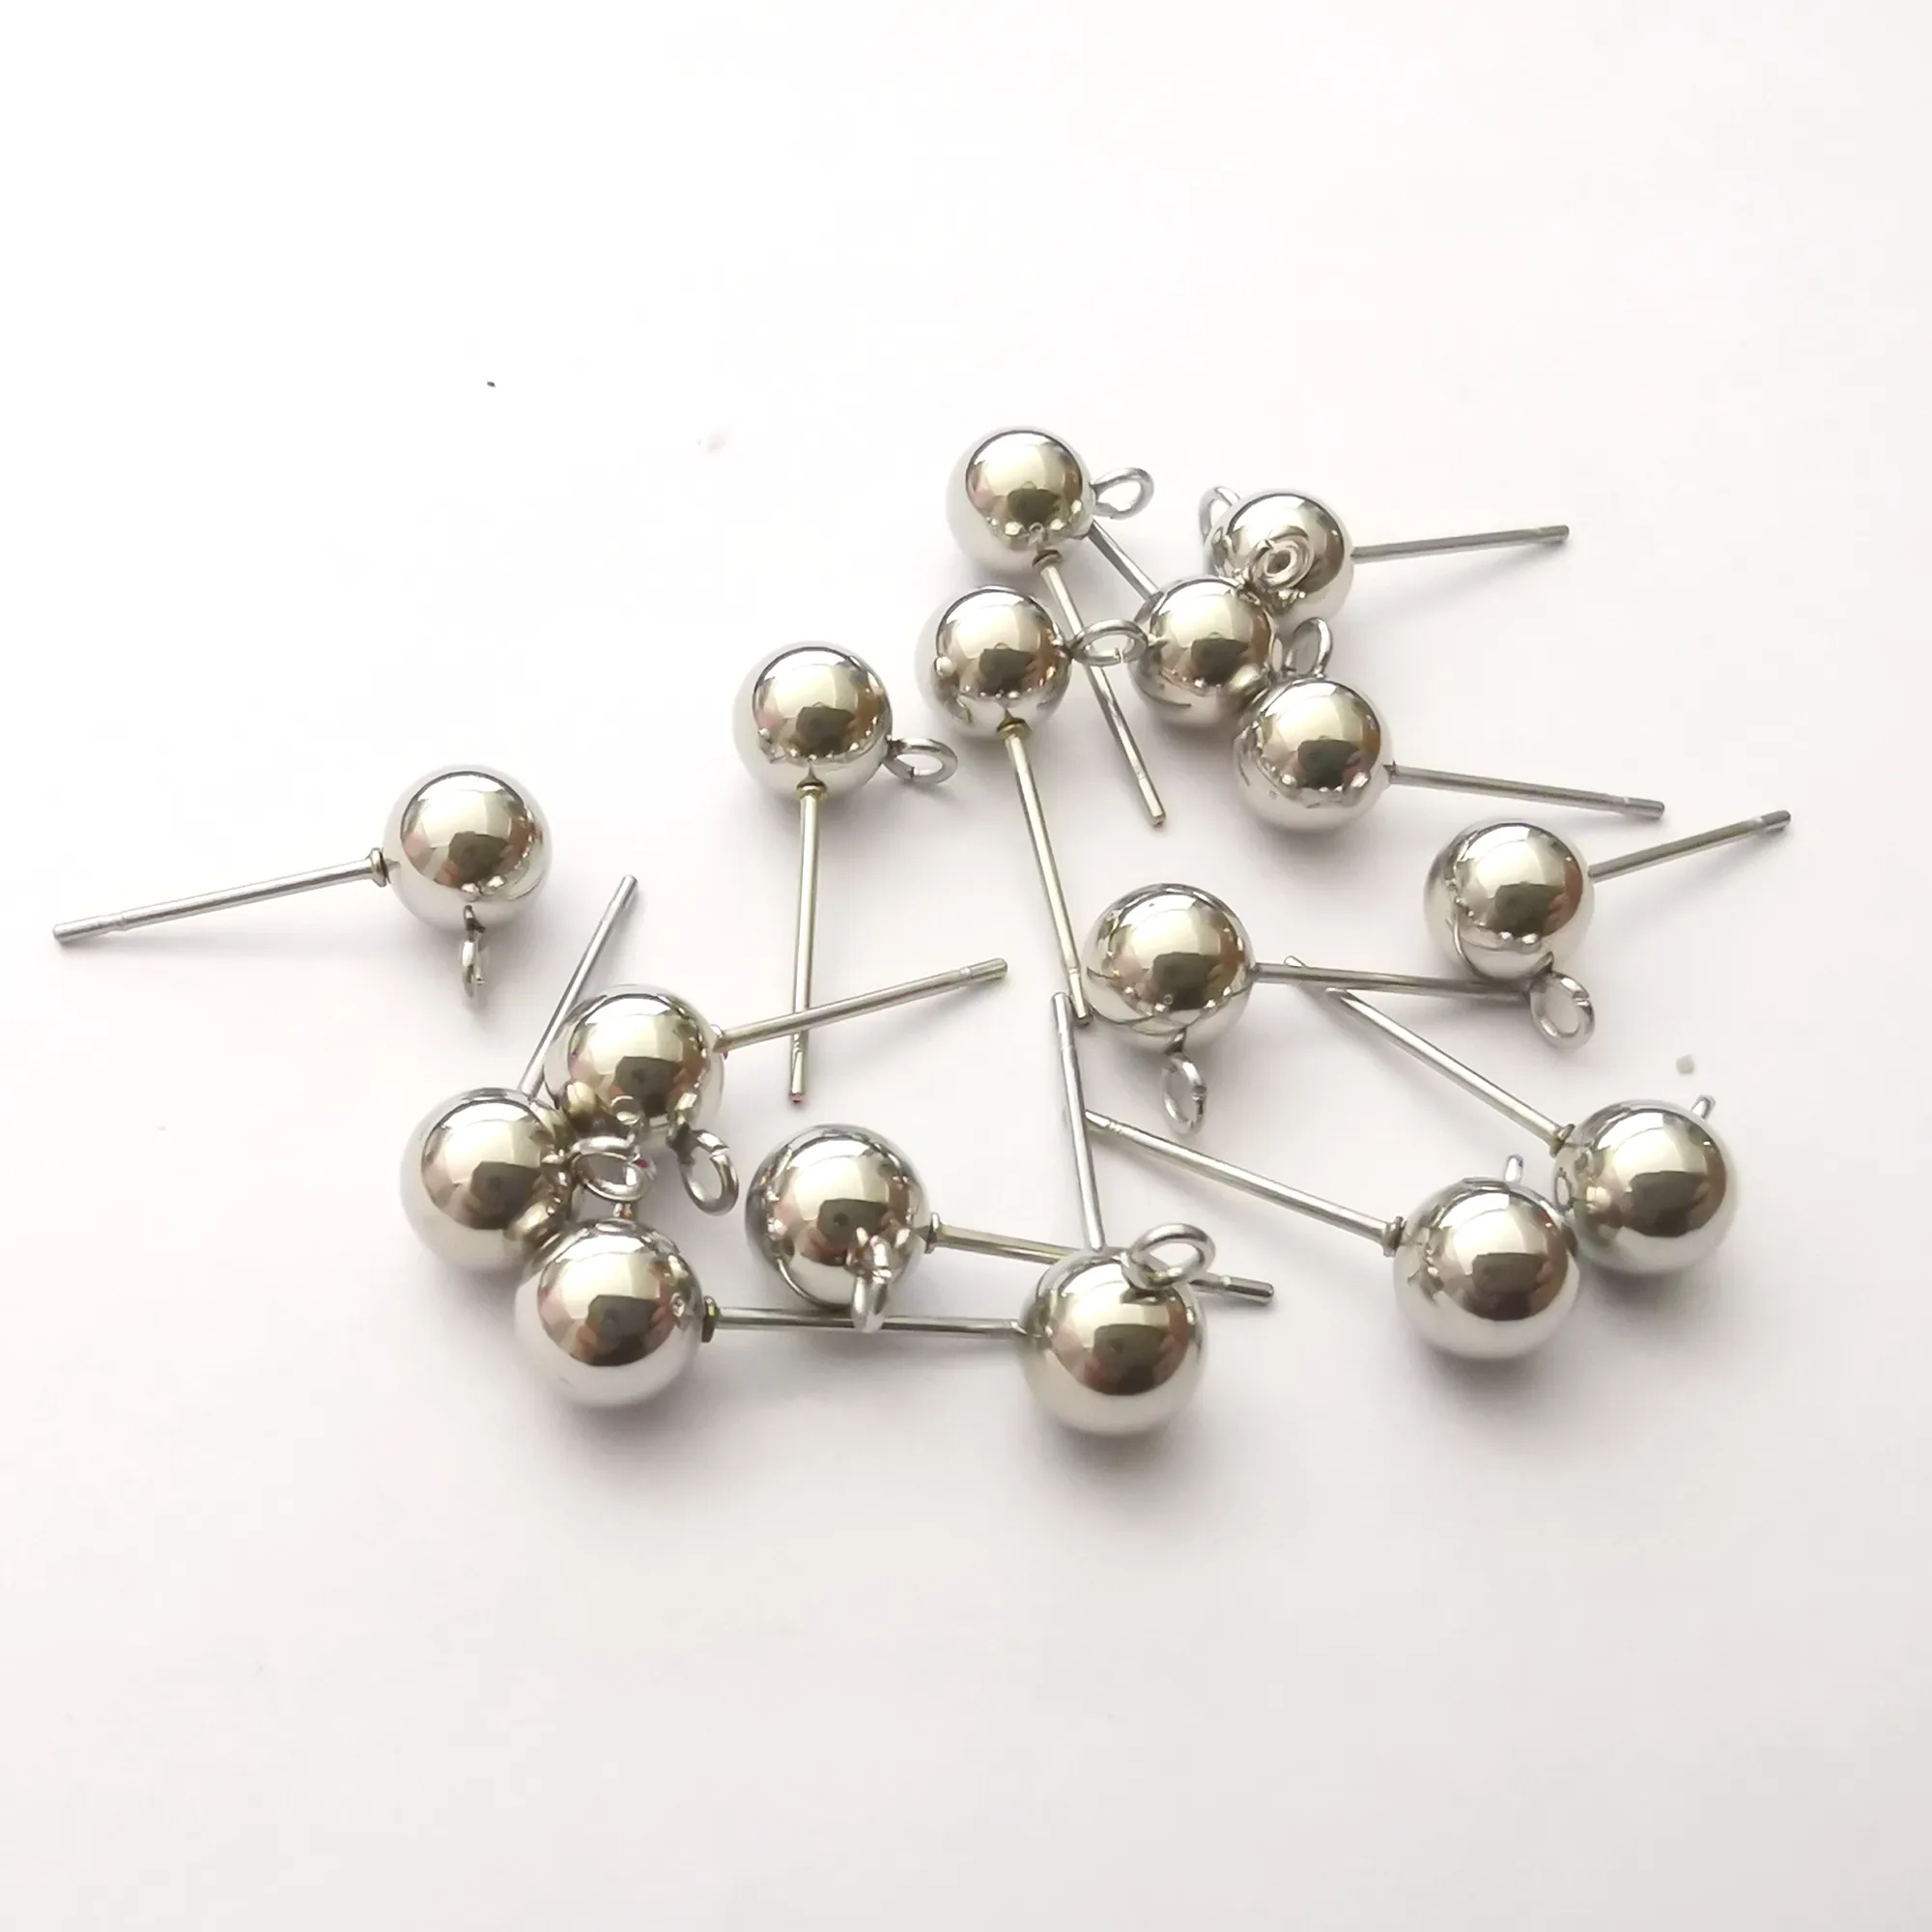 100pcs mycket i bulk silver / guld rostfritt stål örat ledningar pin ~ med pärla + spole örhänge hitta diy